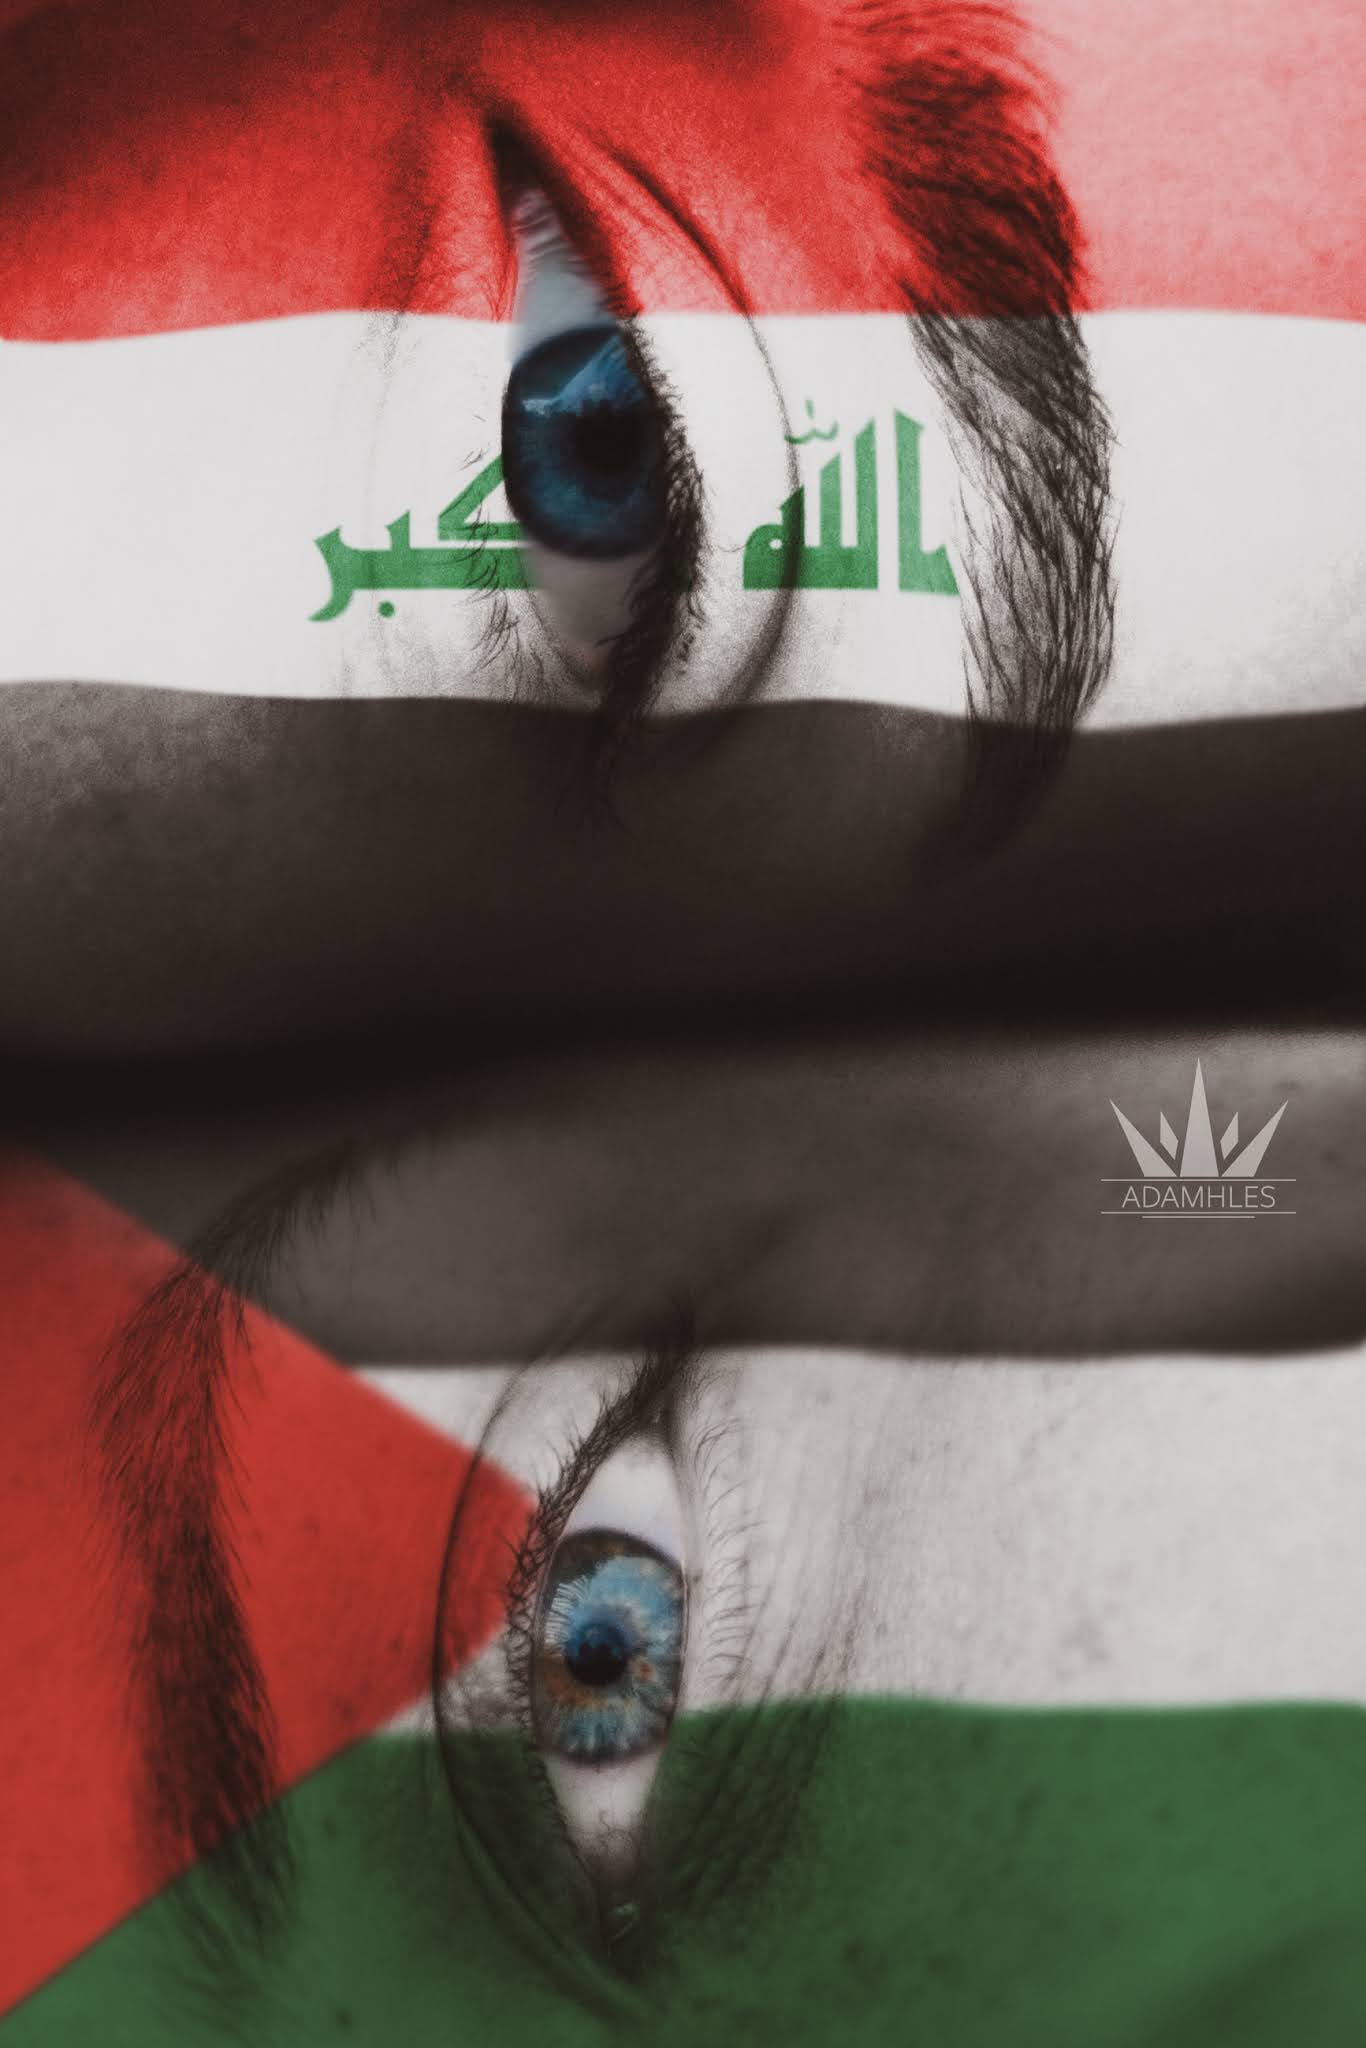 تحميل اجمل خلفيات العراق وفلسطين خلفية رائعة علم فلسطين والعراق Palestine And Iraq